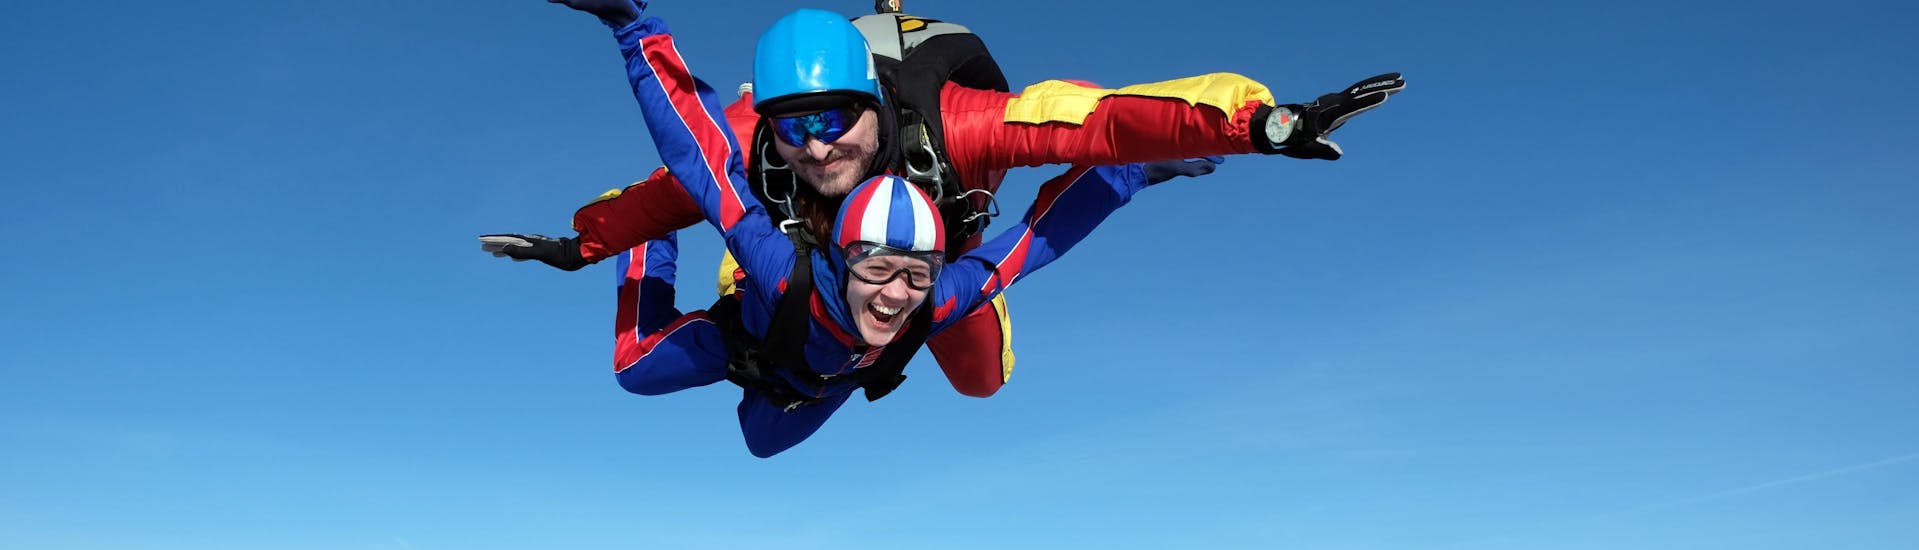 skydive met Black Forest Skydive - Hero image